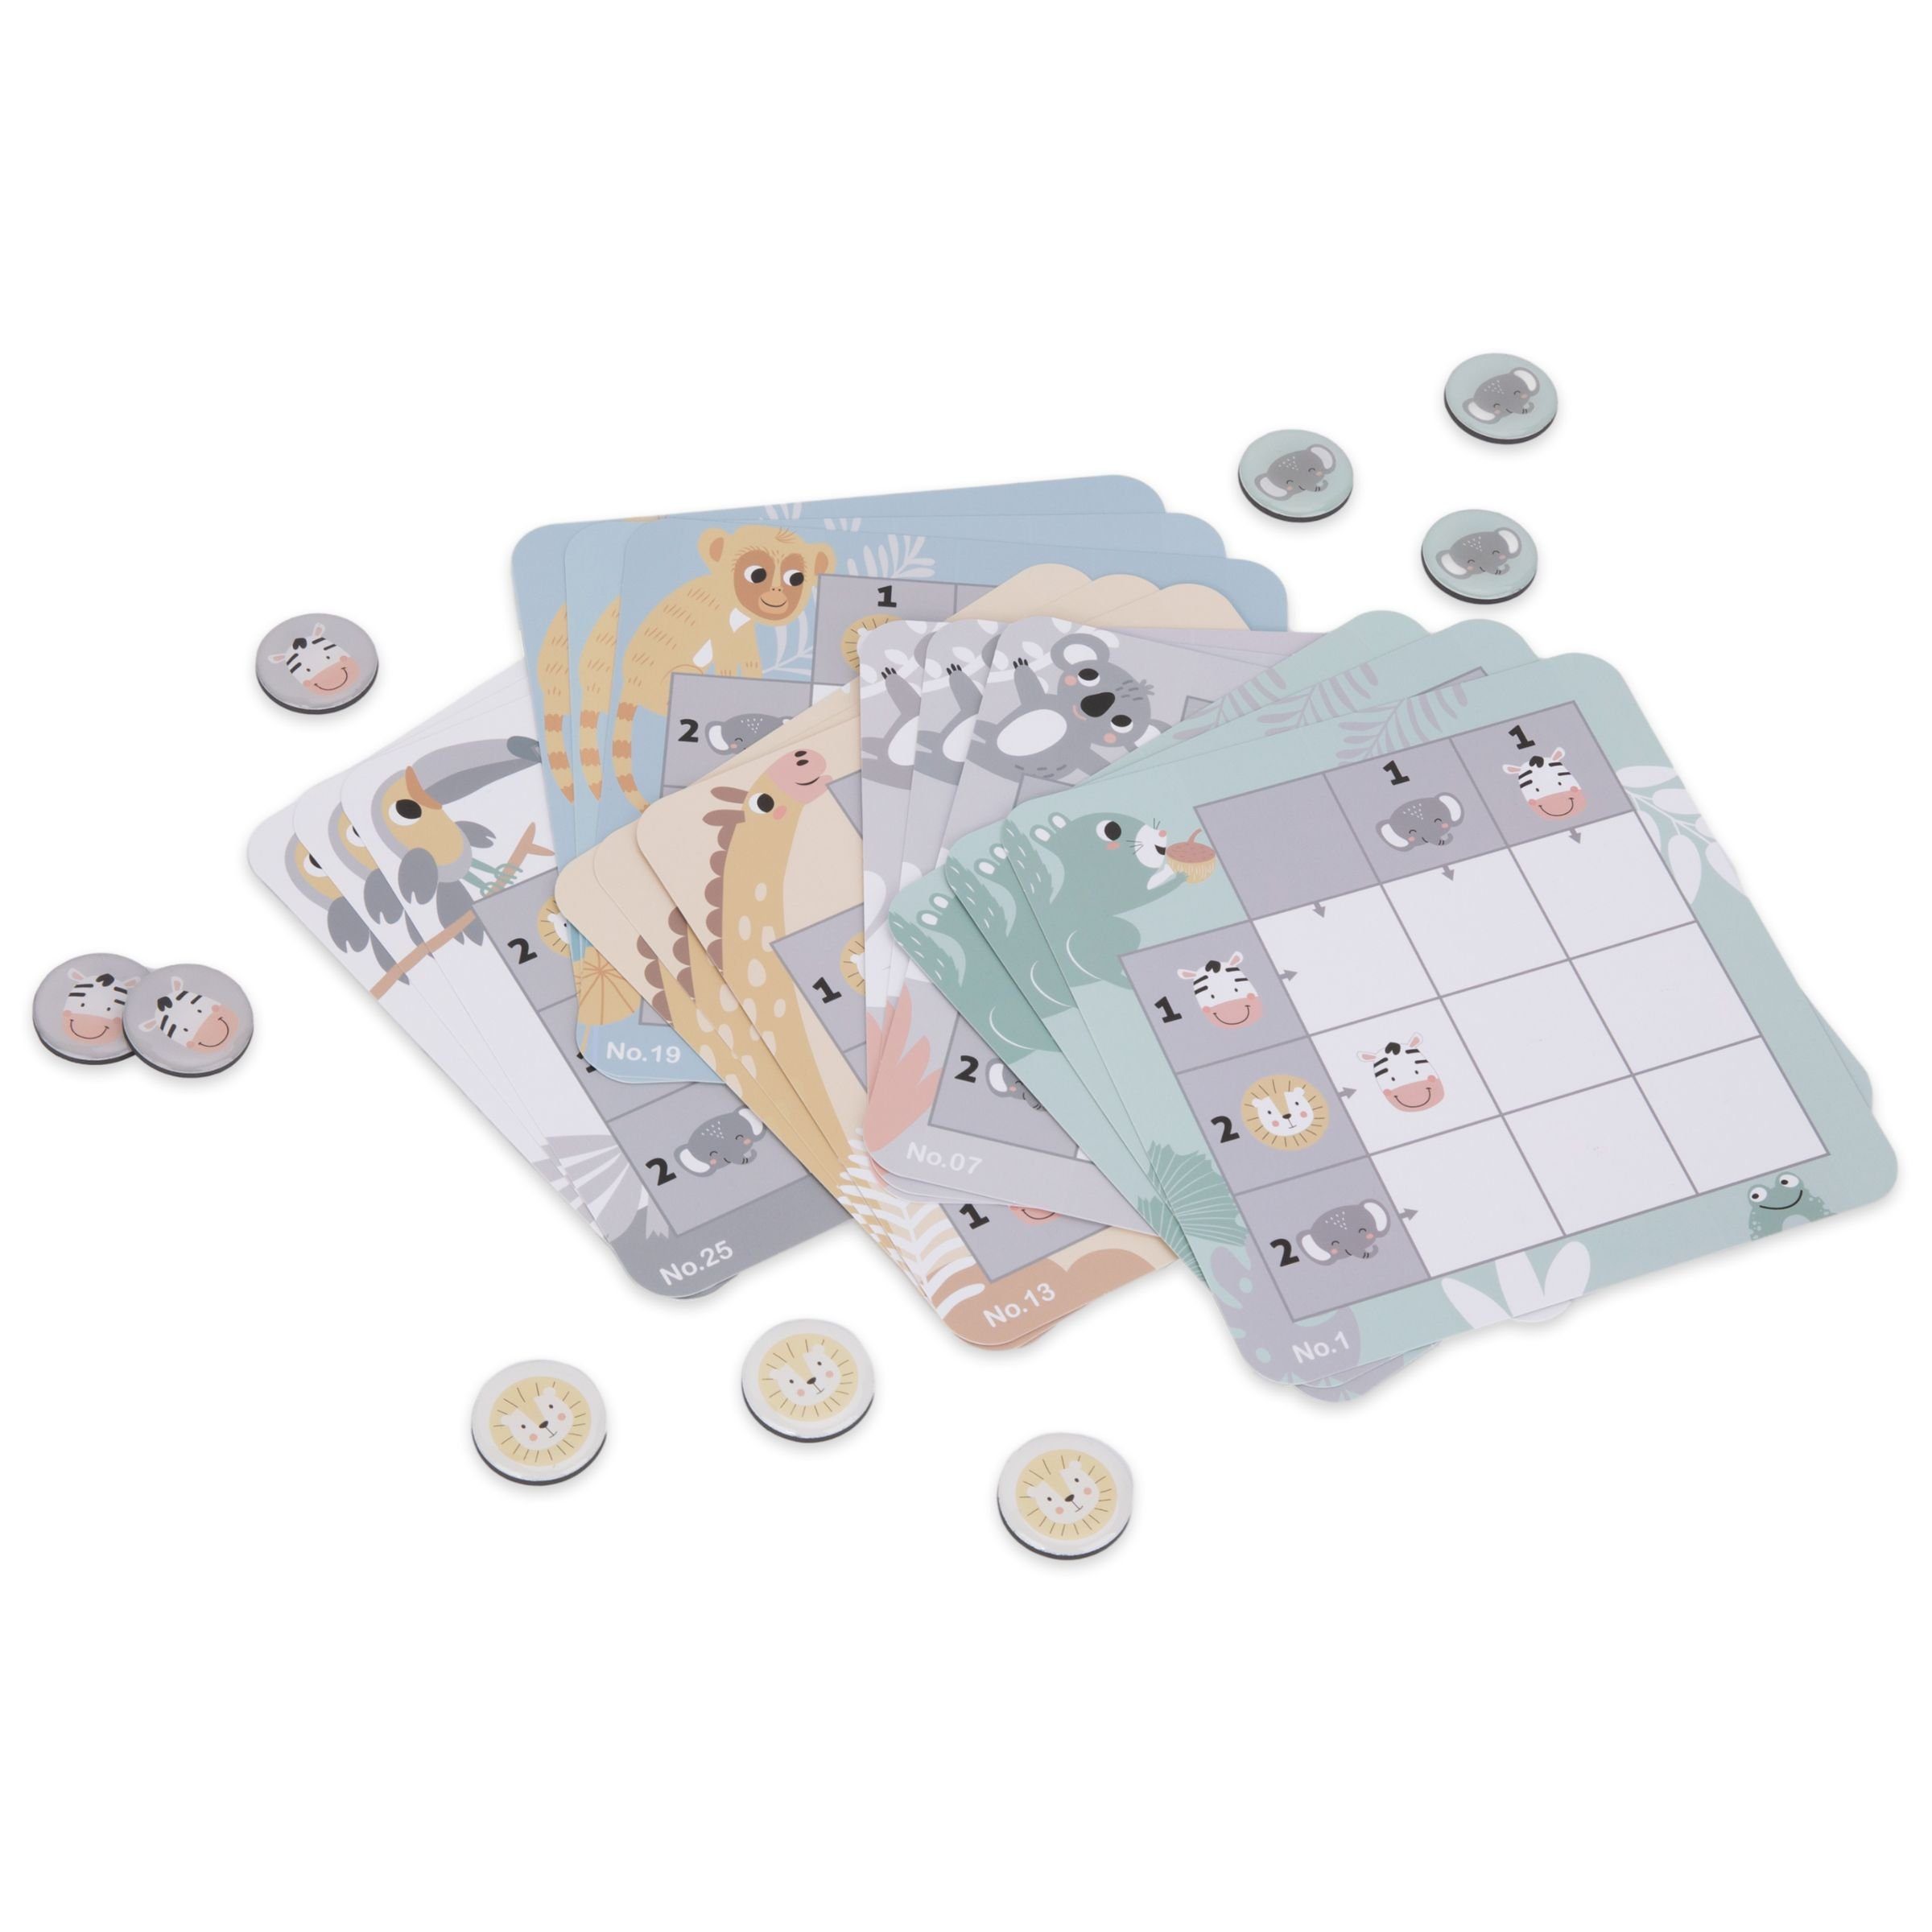 Mamabrum Puzzle-Sortierschale Magnetisches Kinder Reisespiel - für Sudoku